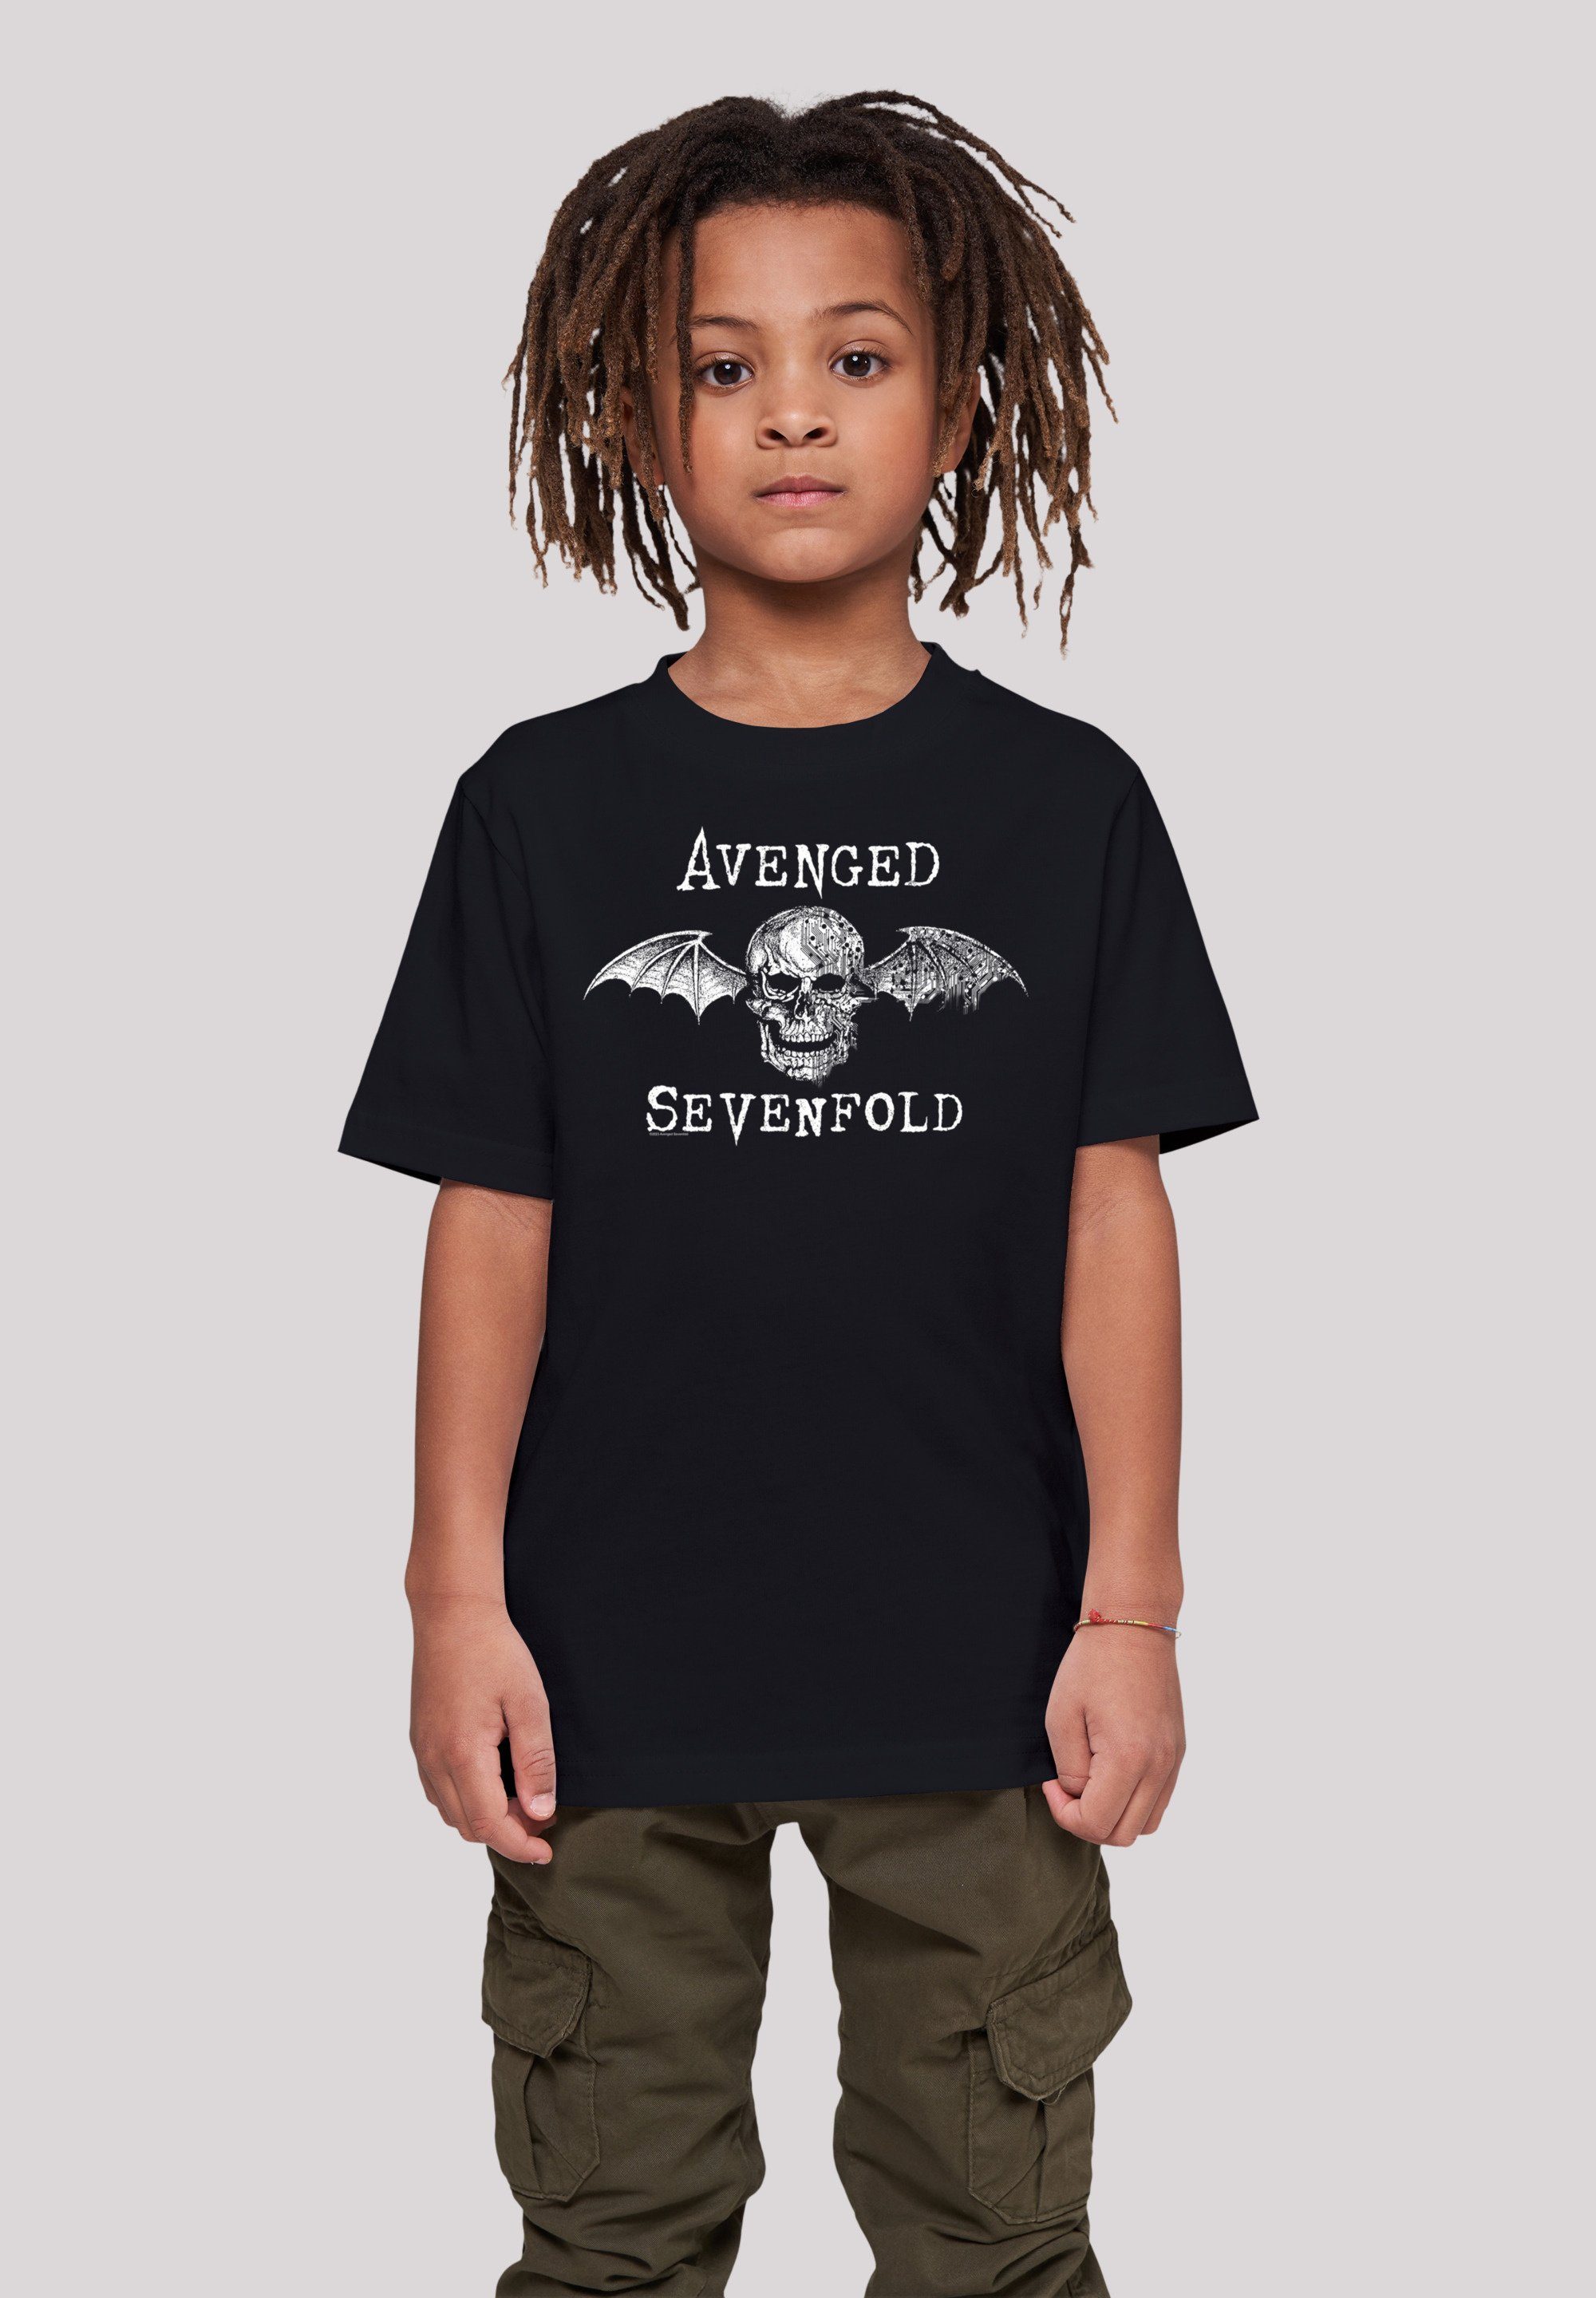 F4NT4STIC T-Shirt Avenged Sevenfold Band Metal weicher hohem Cyborg Bat Band, Premium Tragekomfort Qualität, Baumwollstoff Sehr Rock-Musik, Rock mit